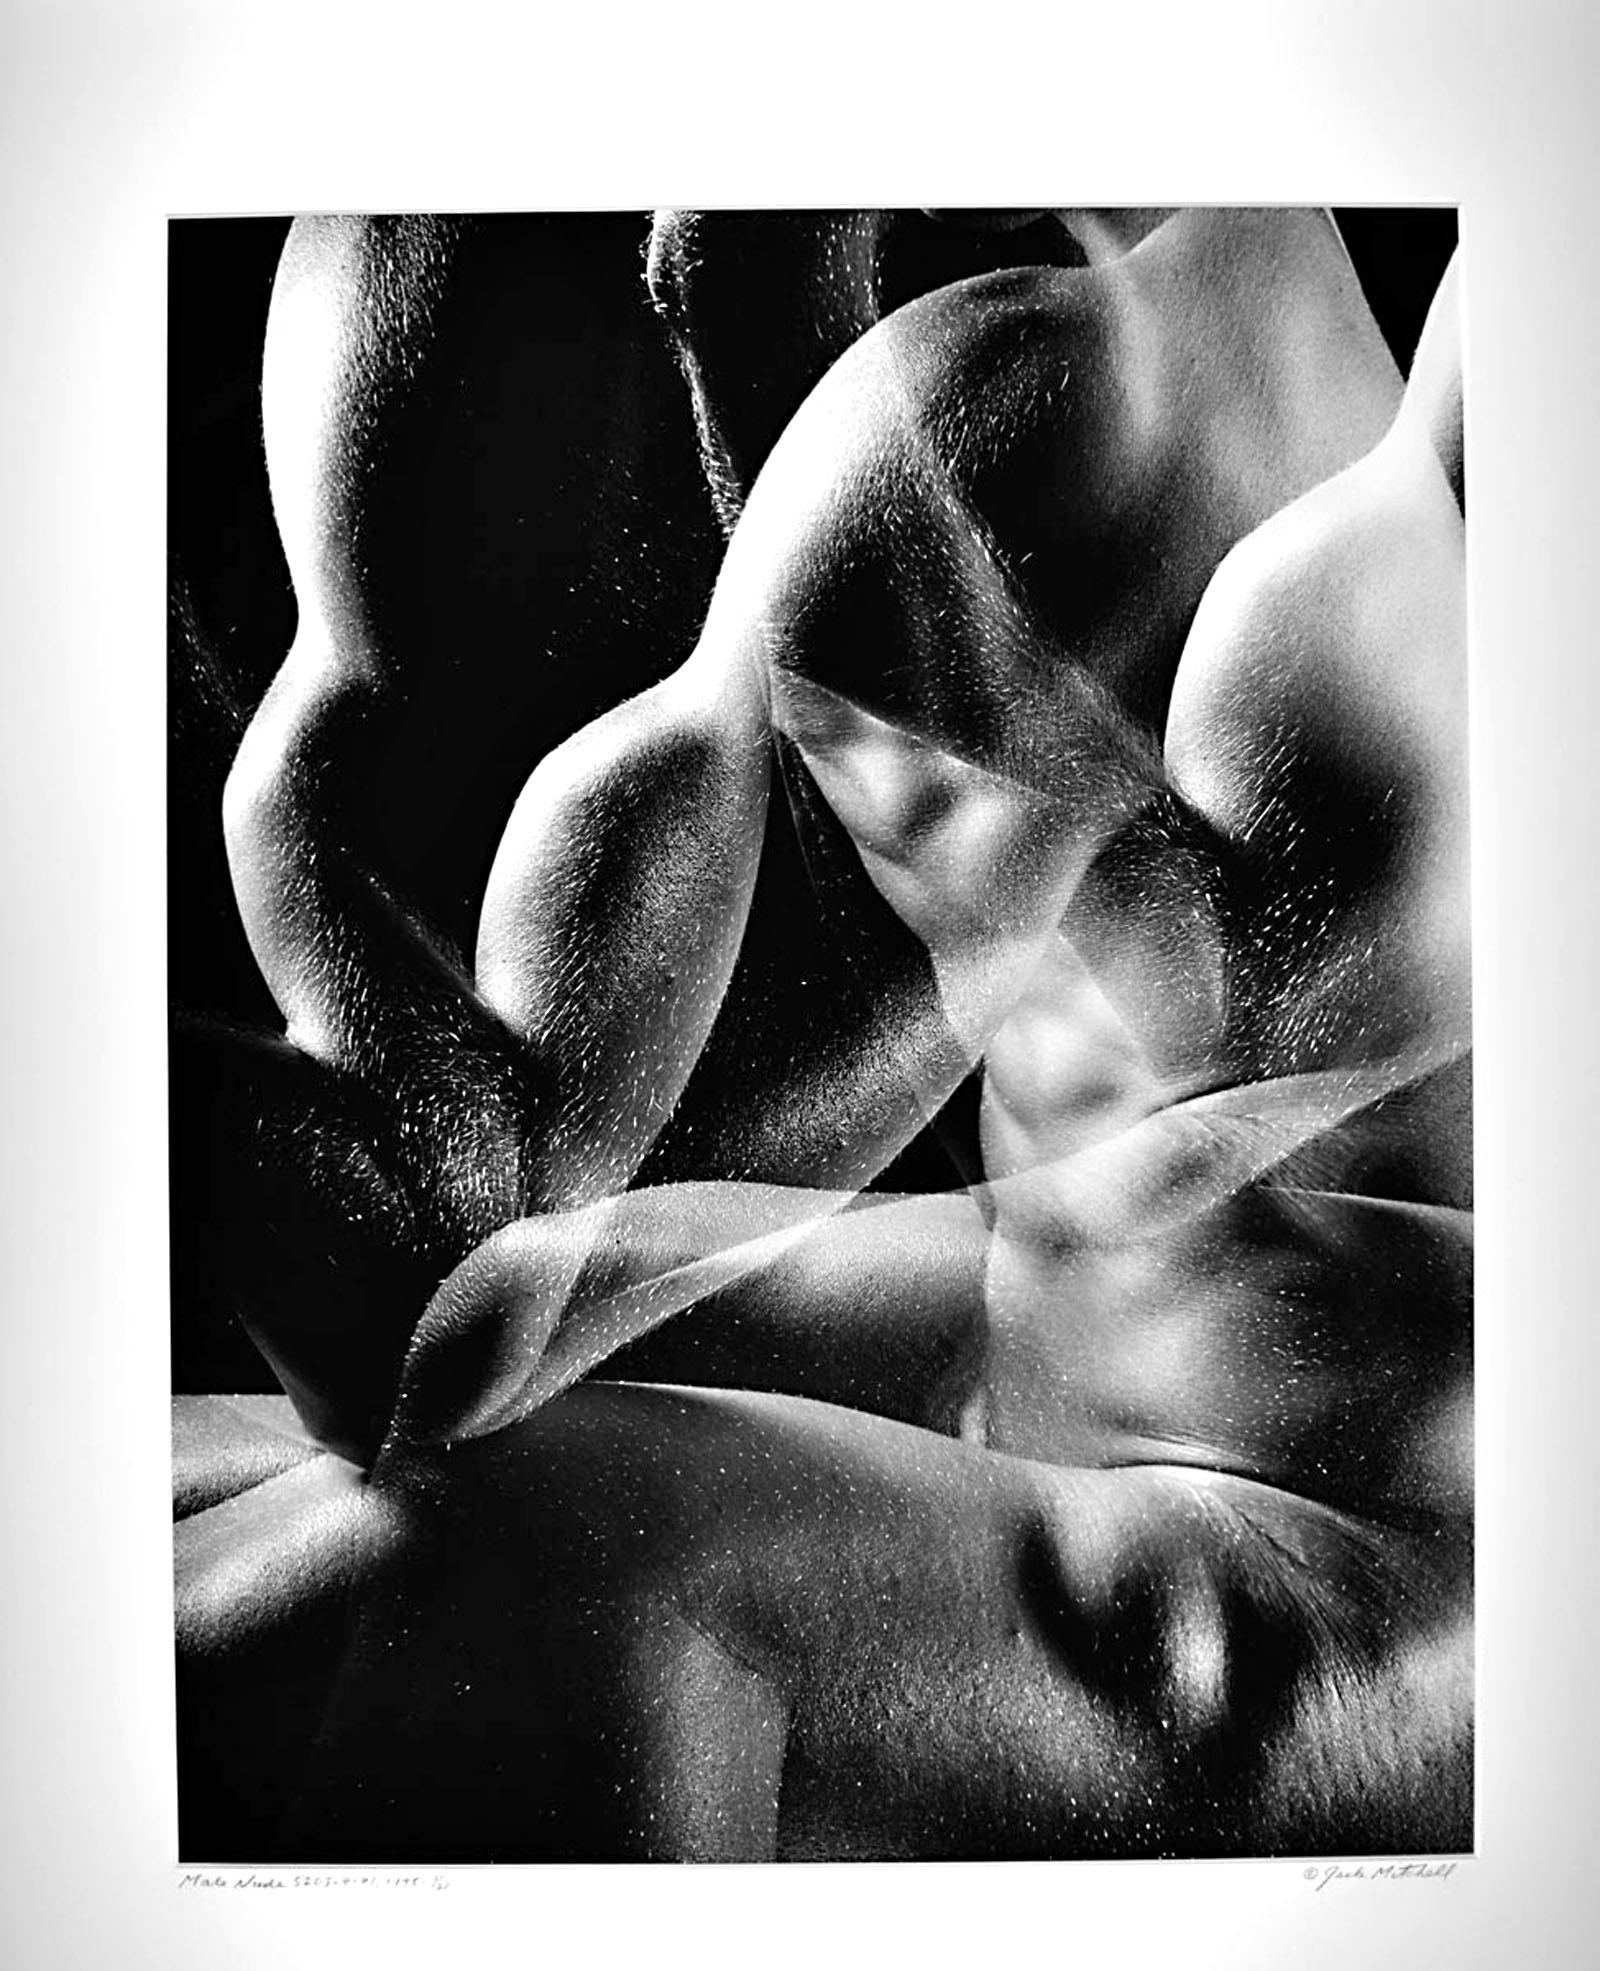 Jack Mitchell Nude Photograph – männlicher Akt aus der Serie Numbered Nudes, signierter Ausstellungsdruck mit mehreren Belichtungen